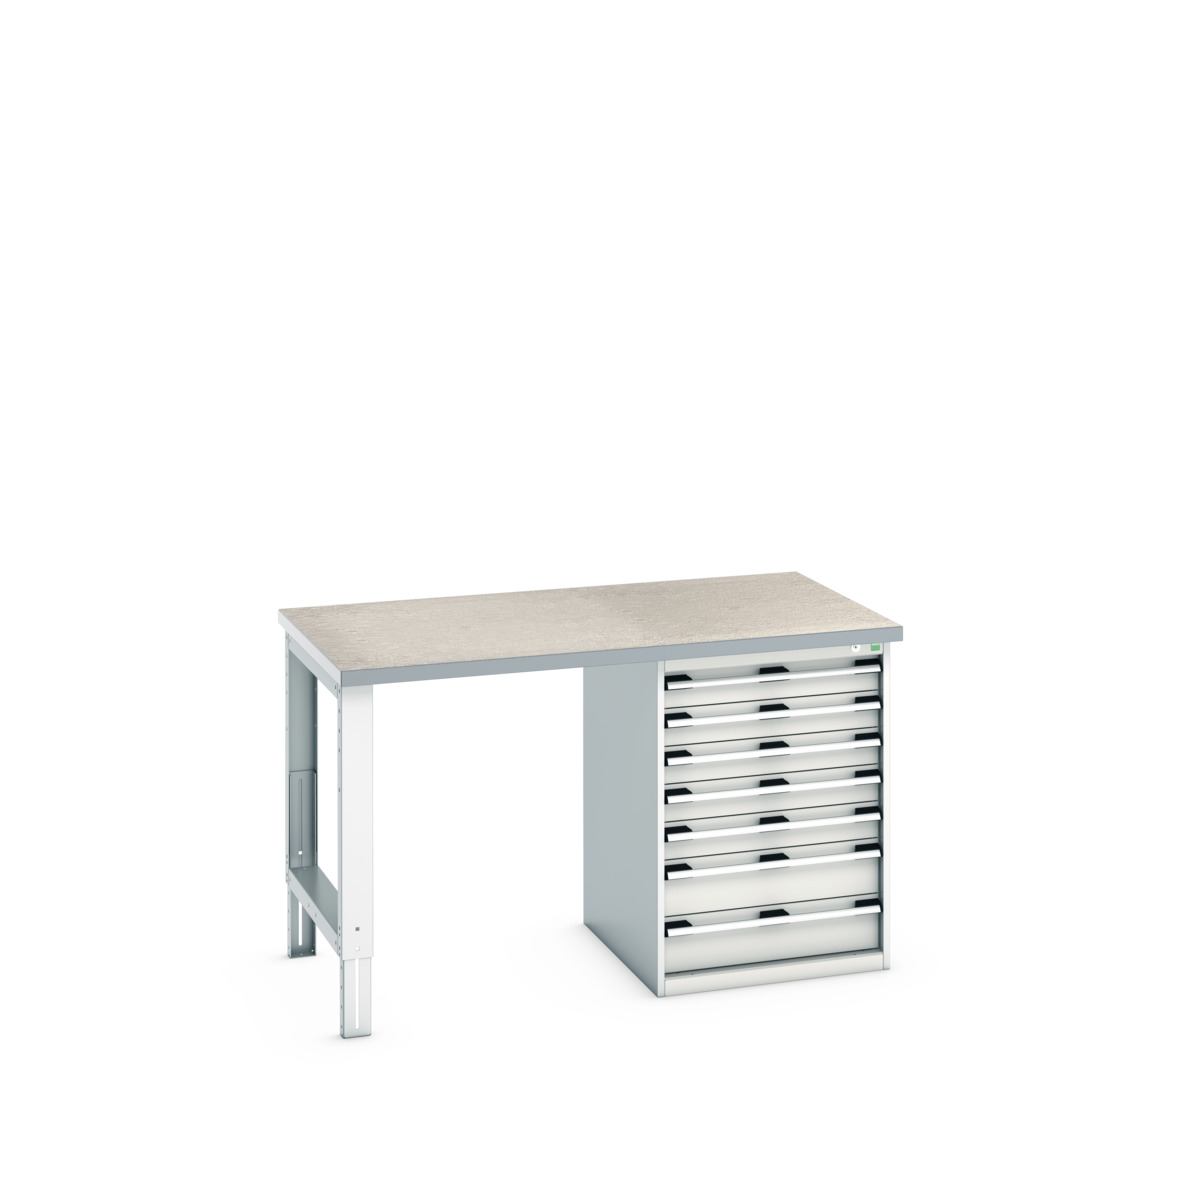 41003499.16V - cubio pedestal bench (lino)